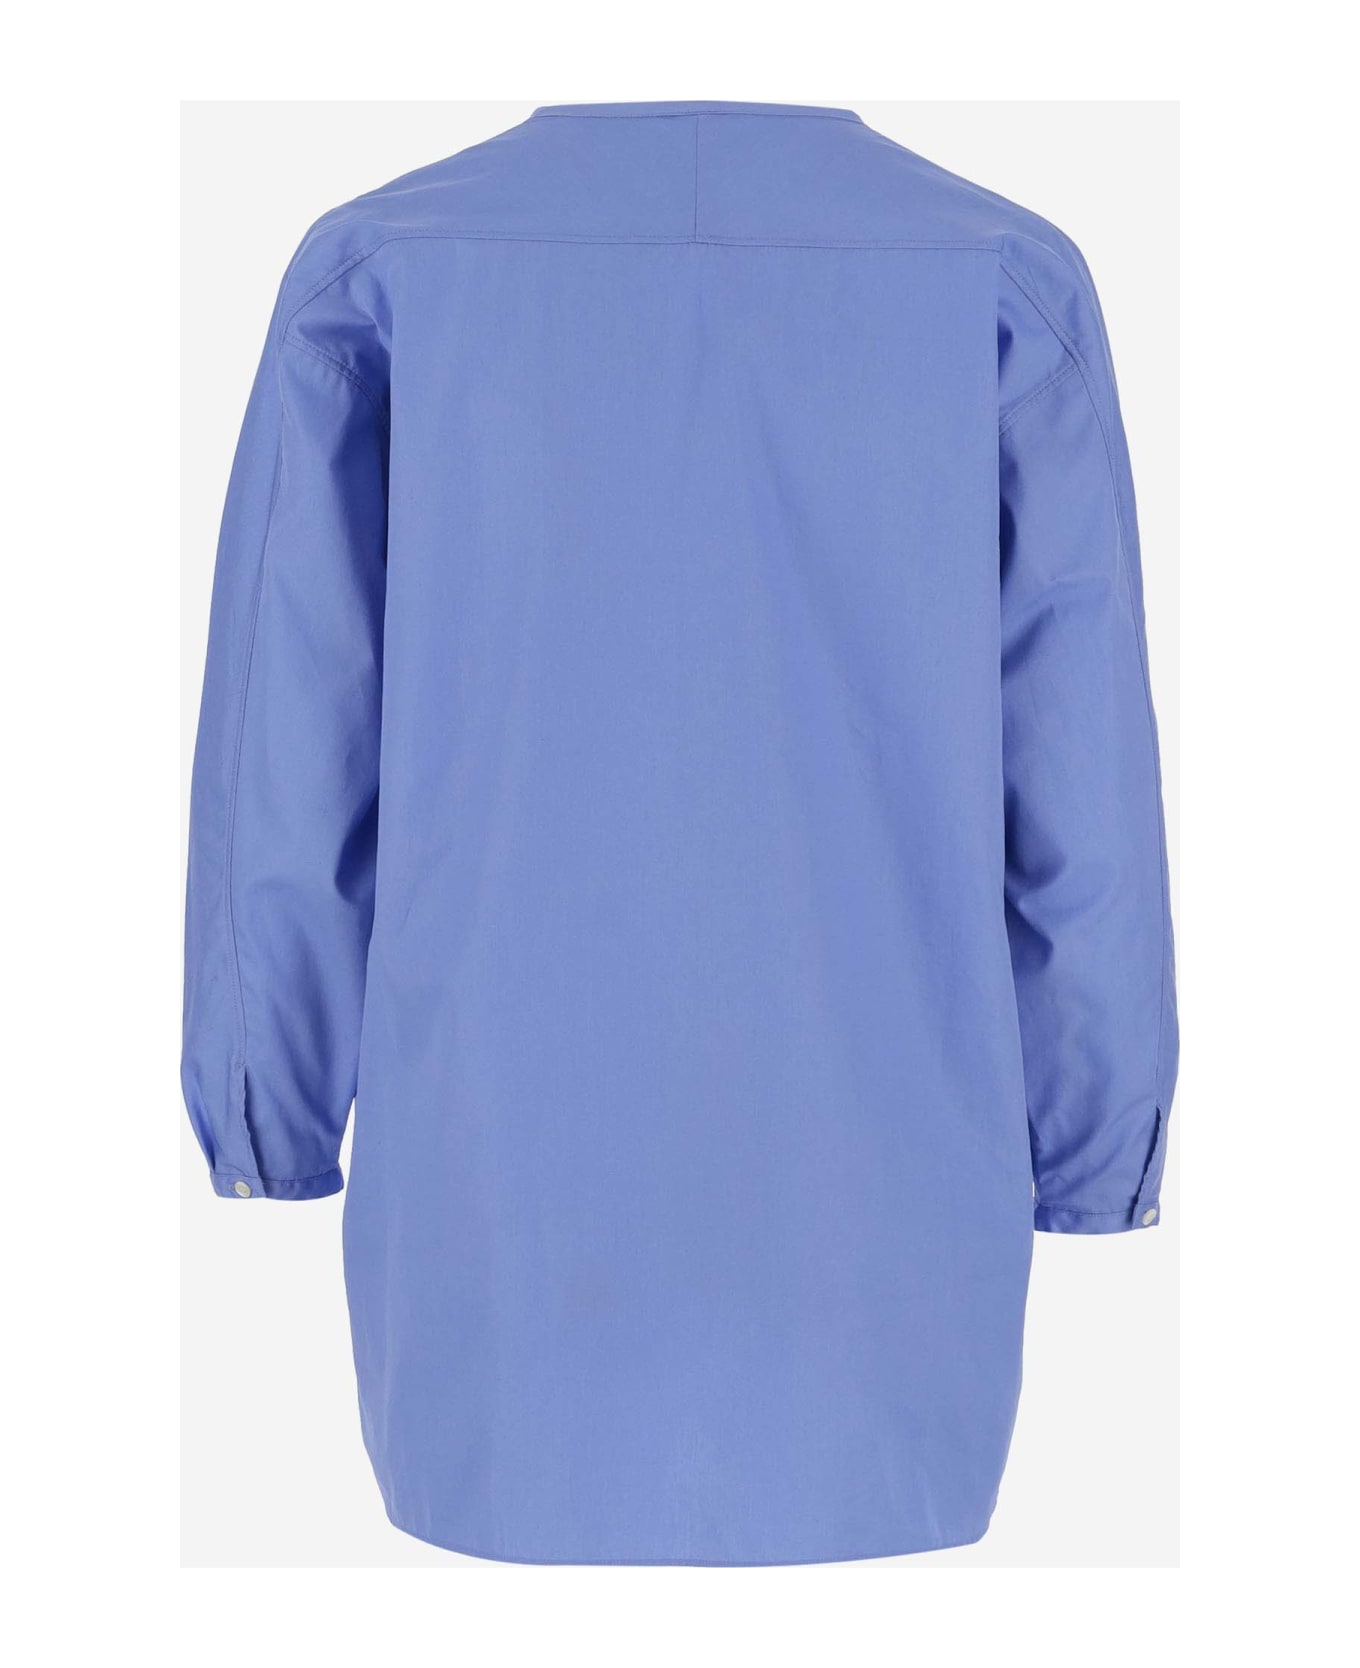 Aspesi Cotton Shirt - Clear Blue